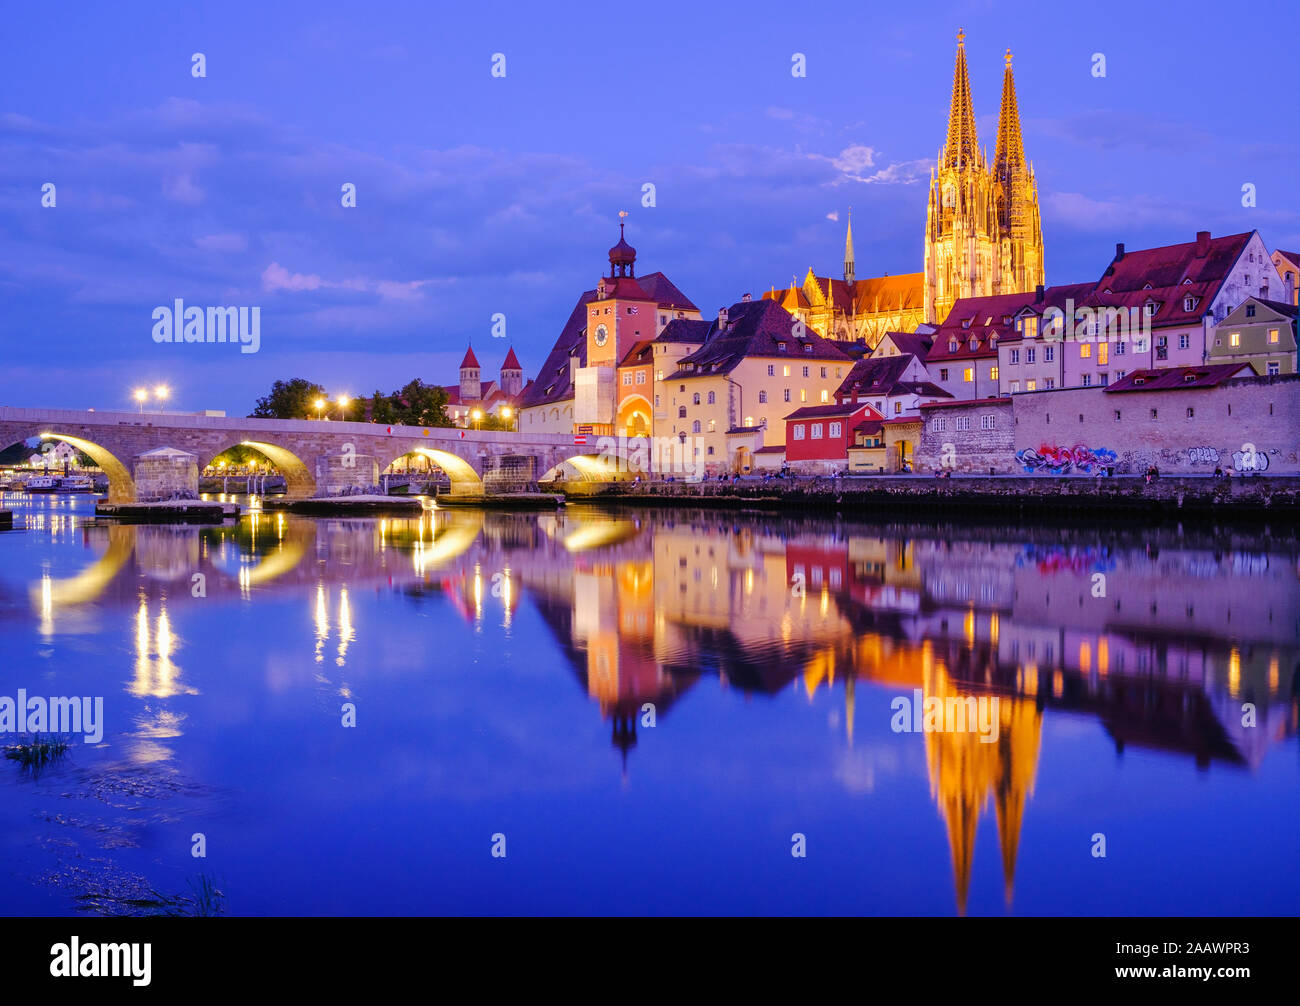 Pont de pierre sur la rivière du Danube en ville illuminée au crépuscule, Regensburg, Allemagne Banque D'Images